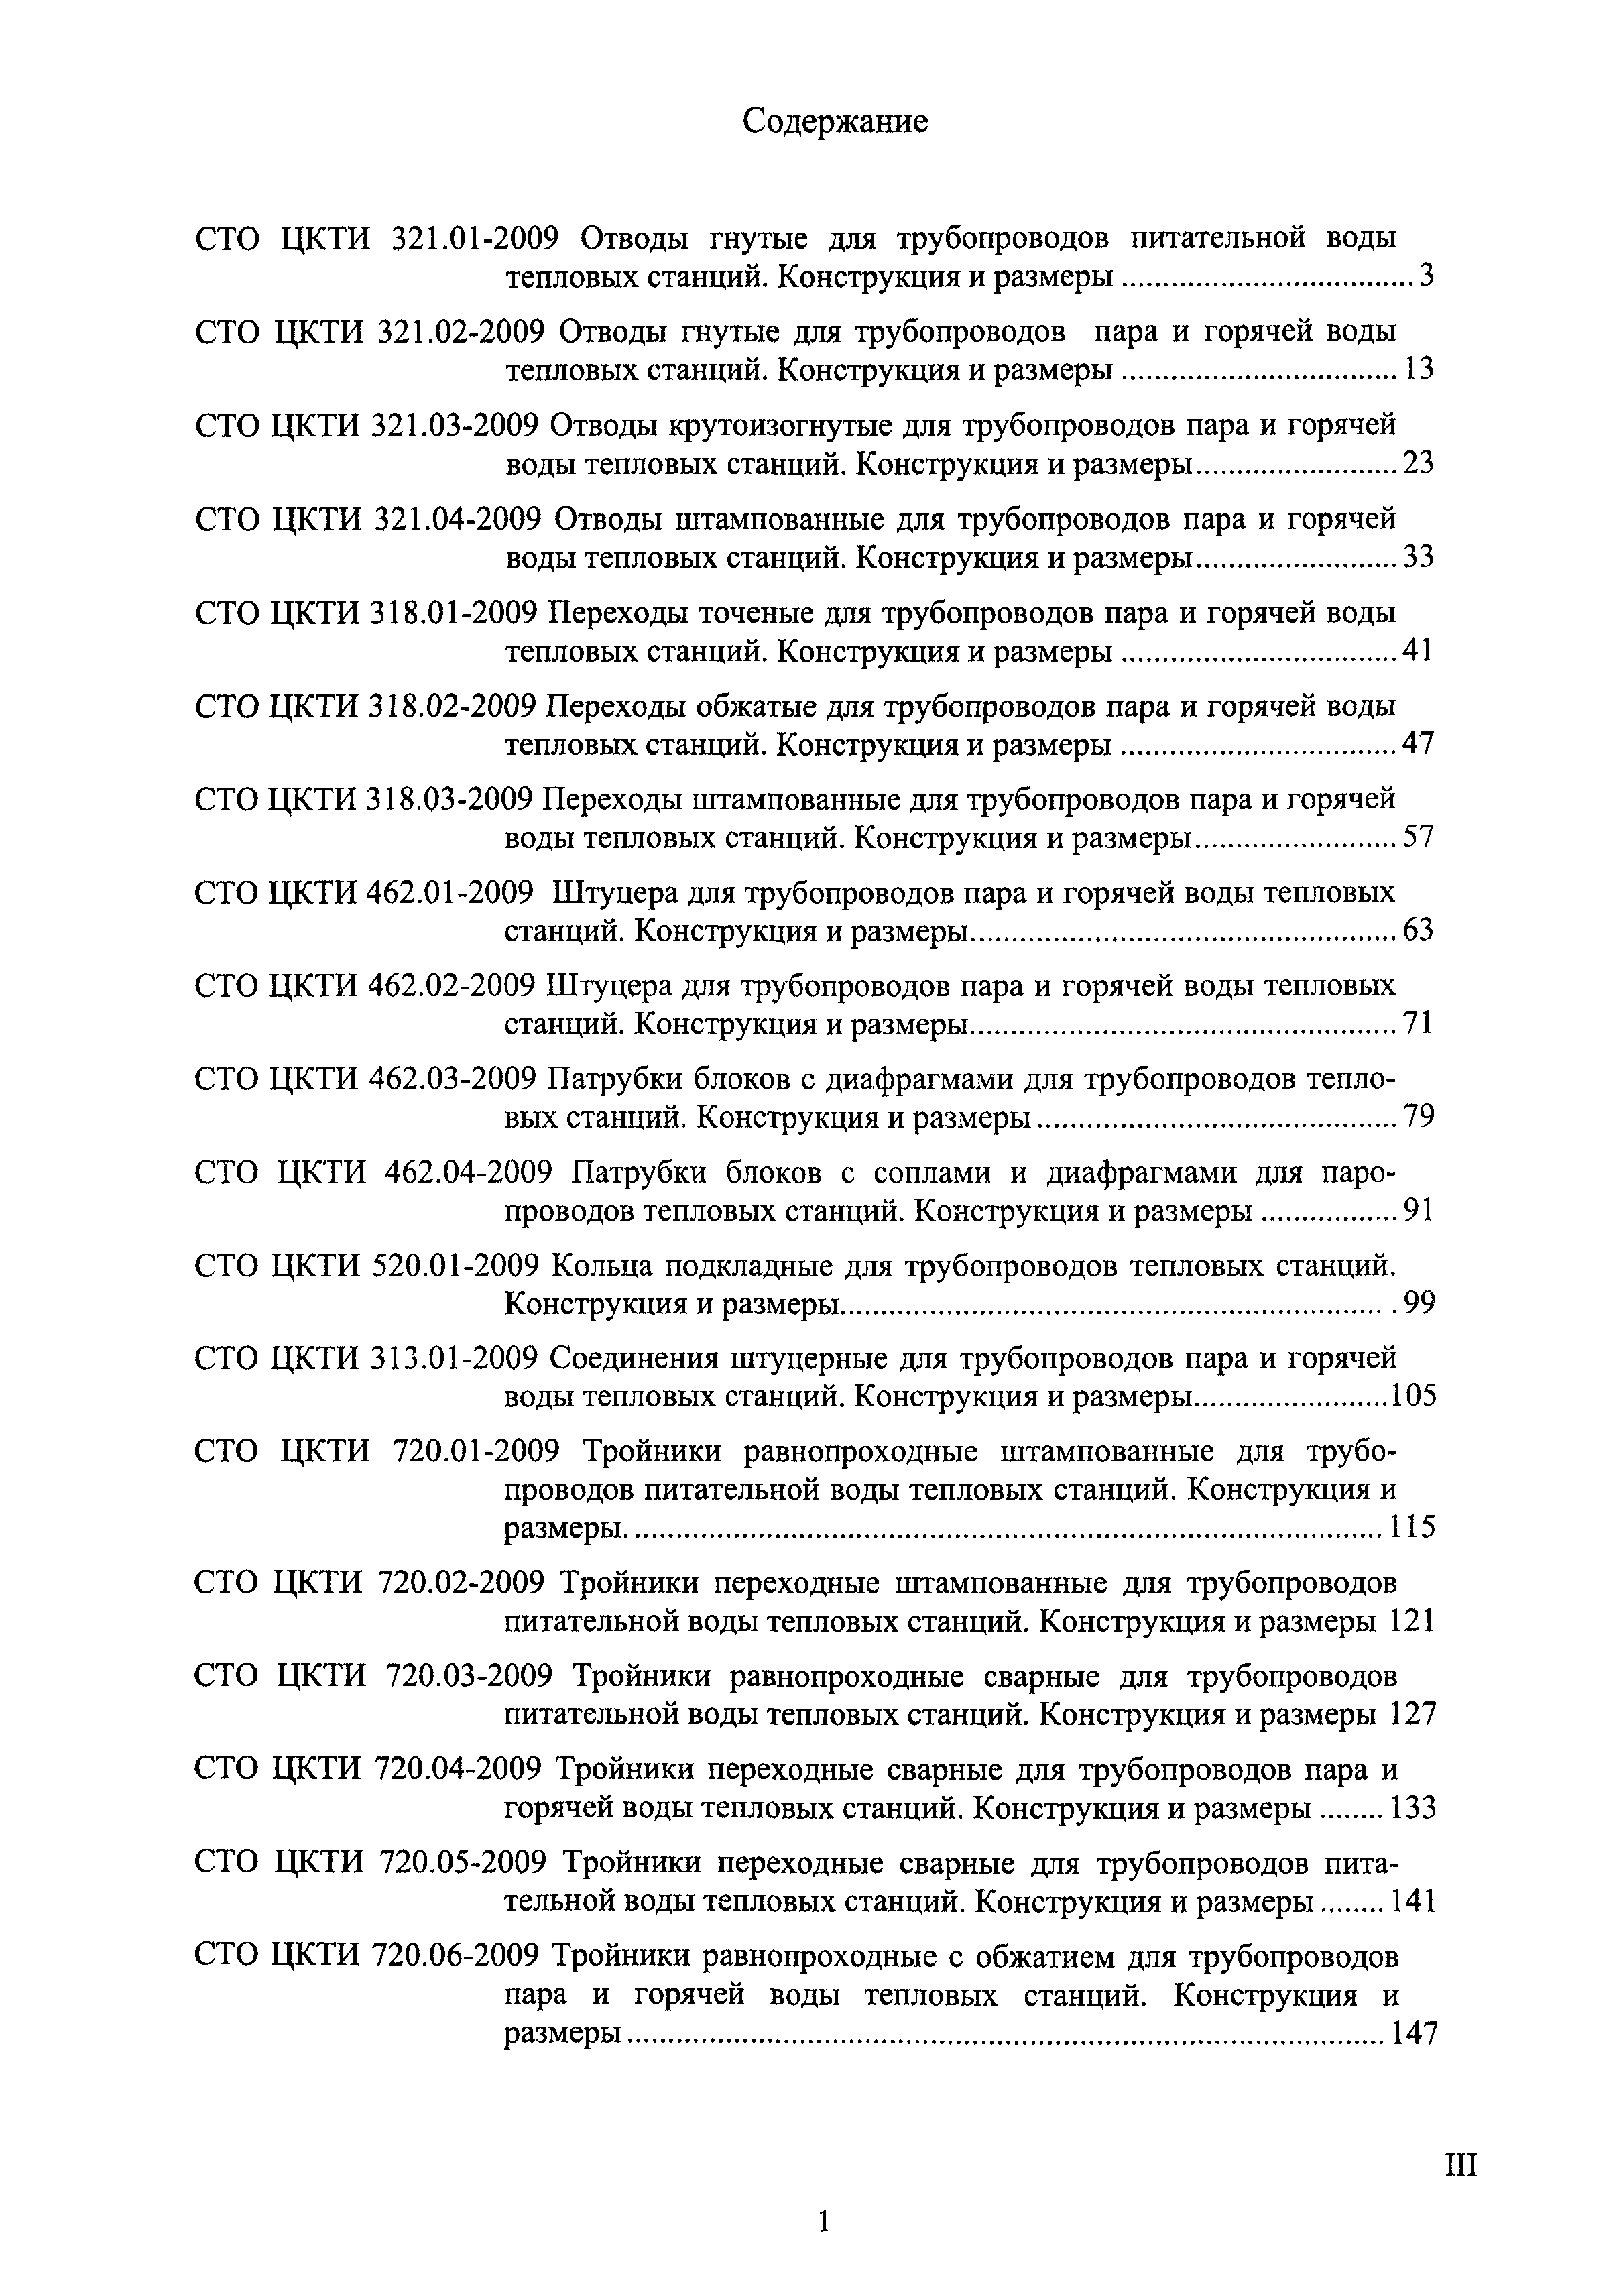 СТО ЦКТИ 318.02-2009